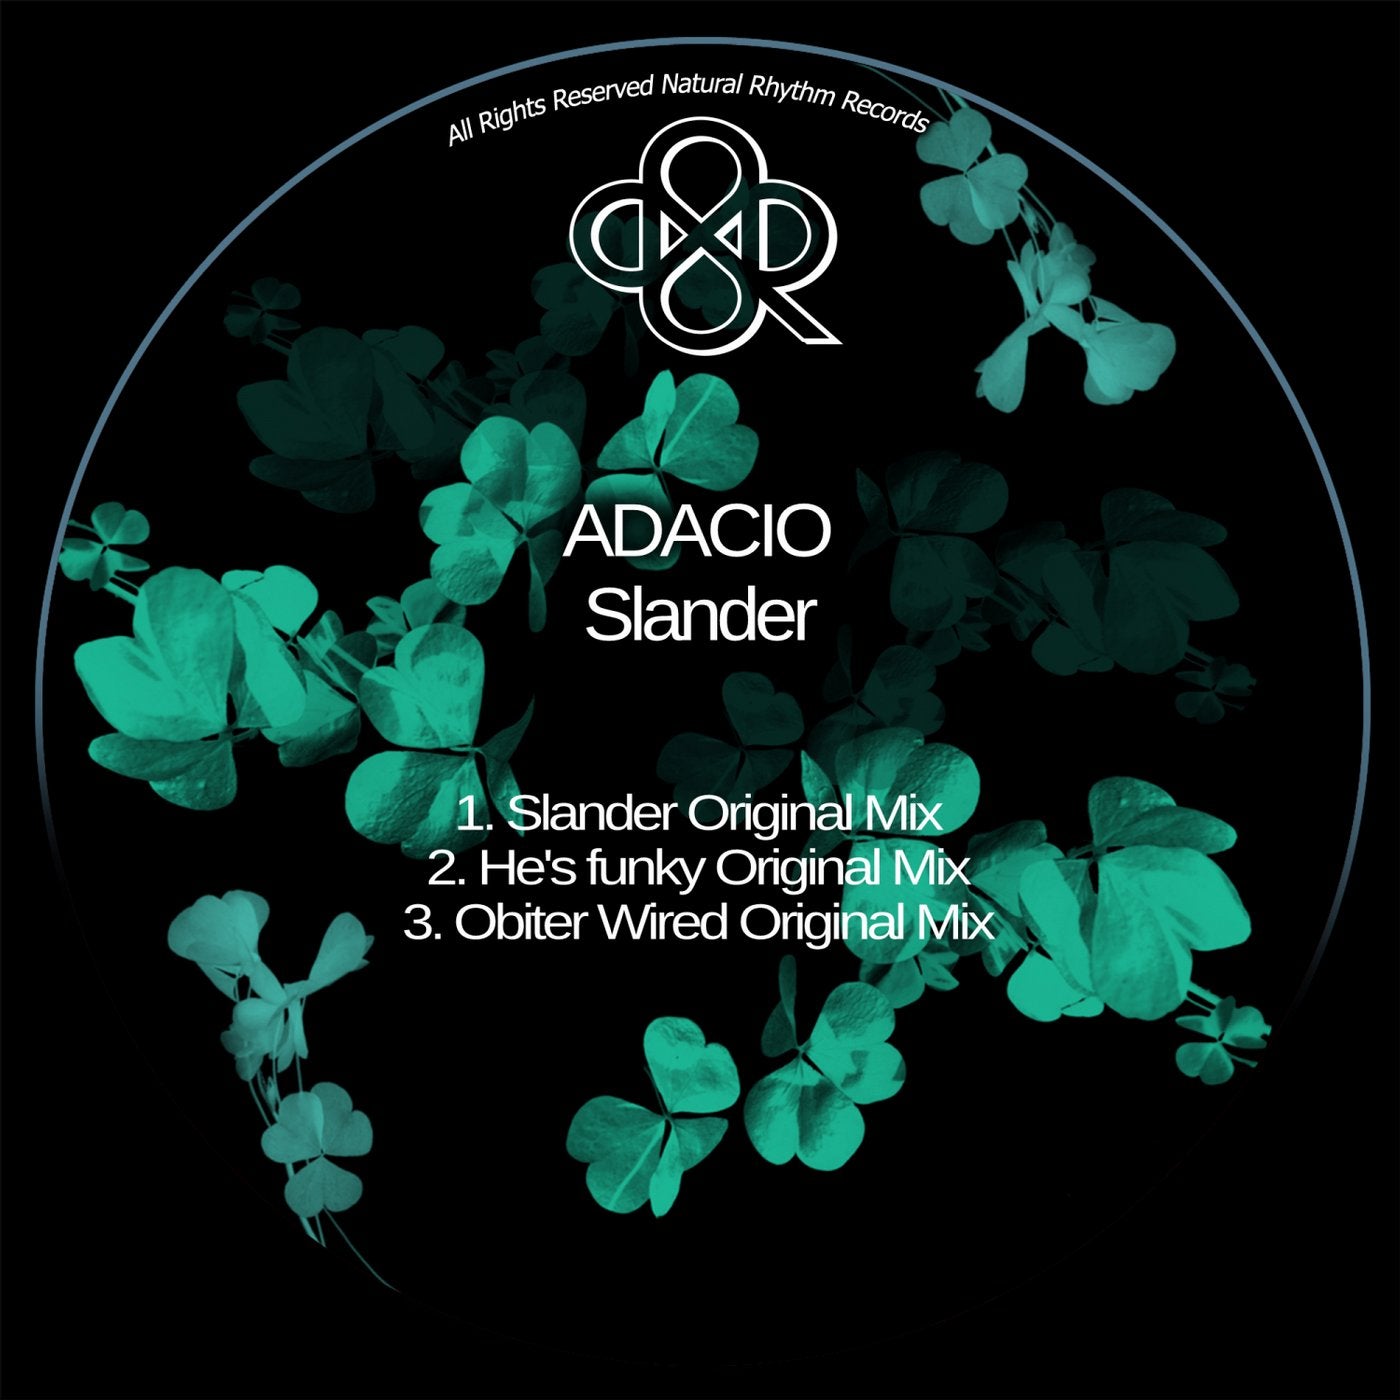 ADACIO music download - Beatport